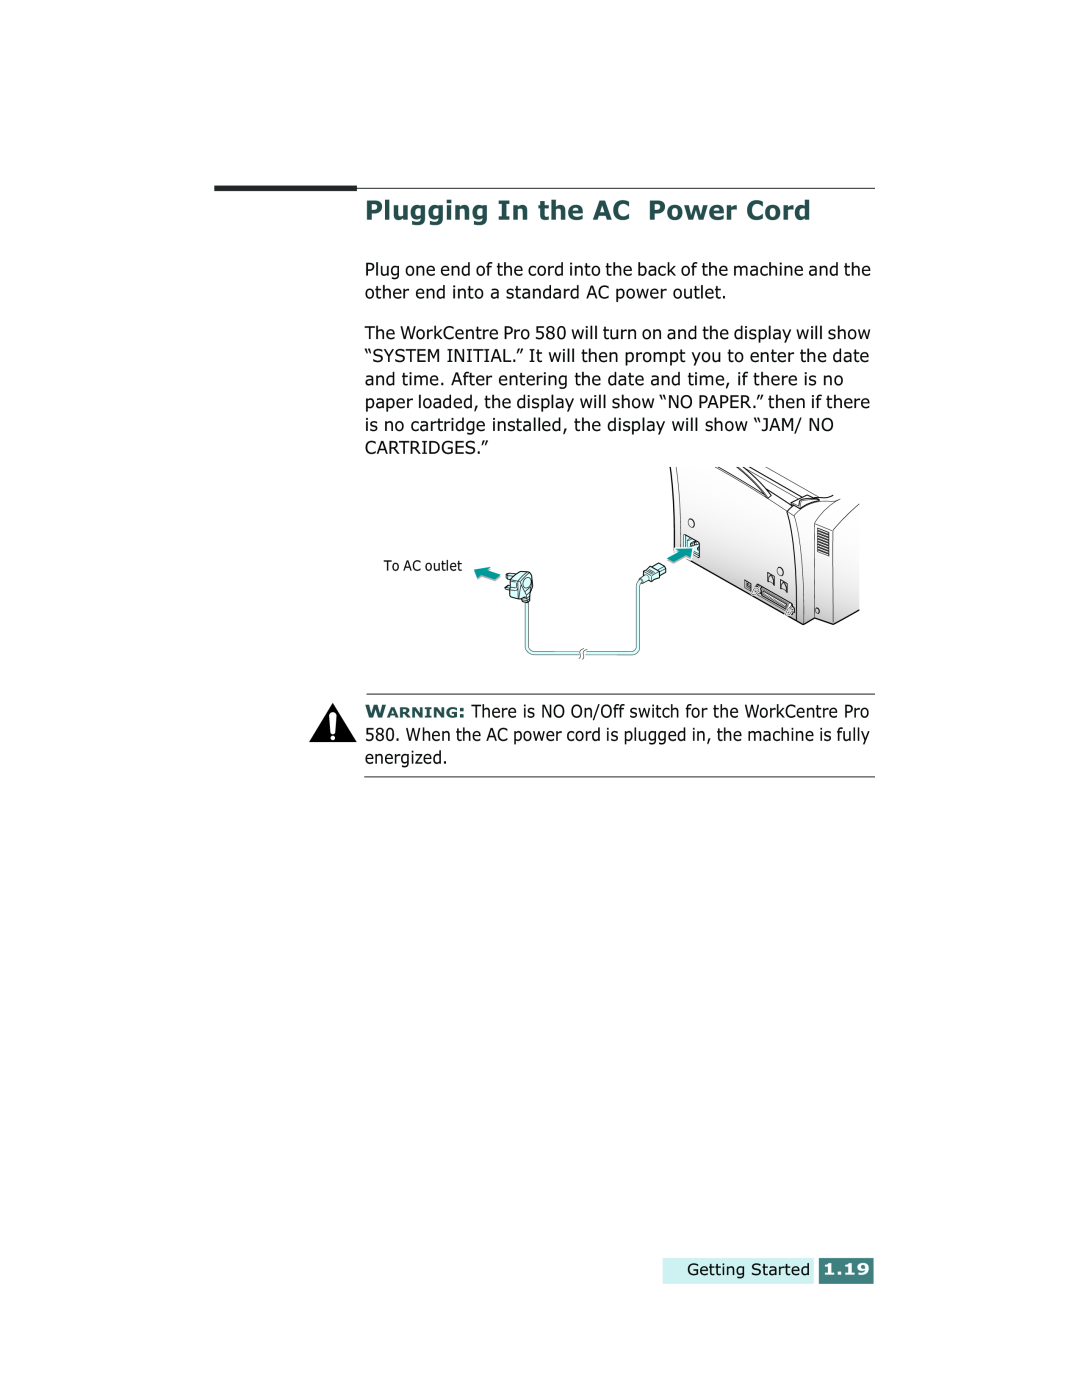 Xerox Pro 580 manual Plugging In the AC Power Cord 